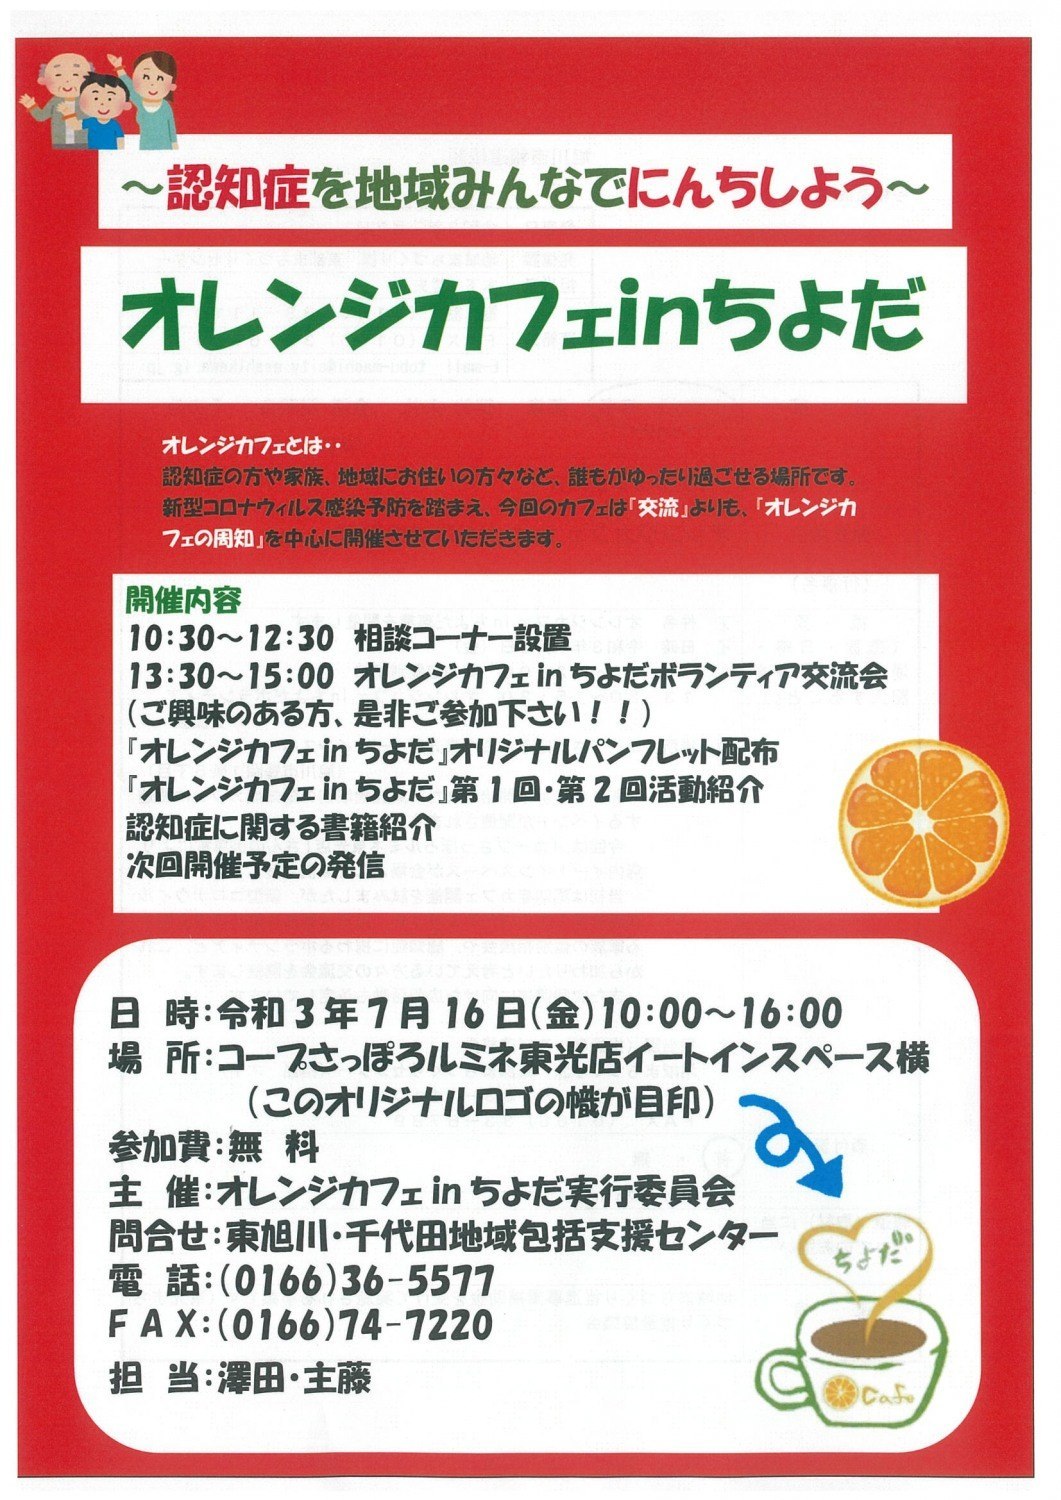 オレンジカフェin千代田 旭川市東光 イベント ライナーウェブ